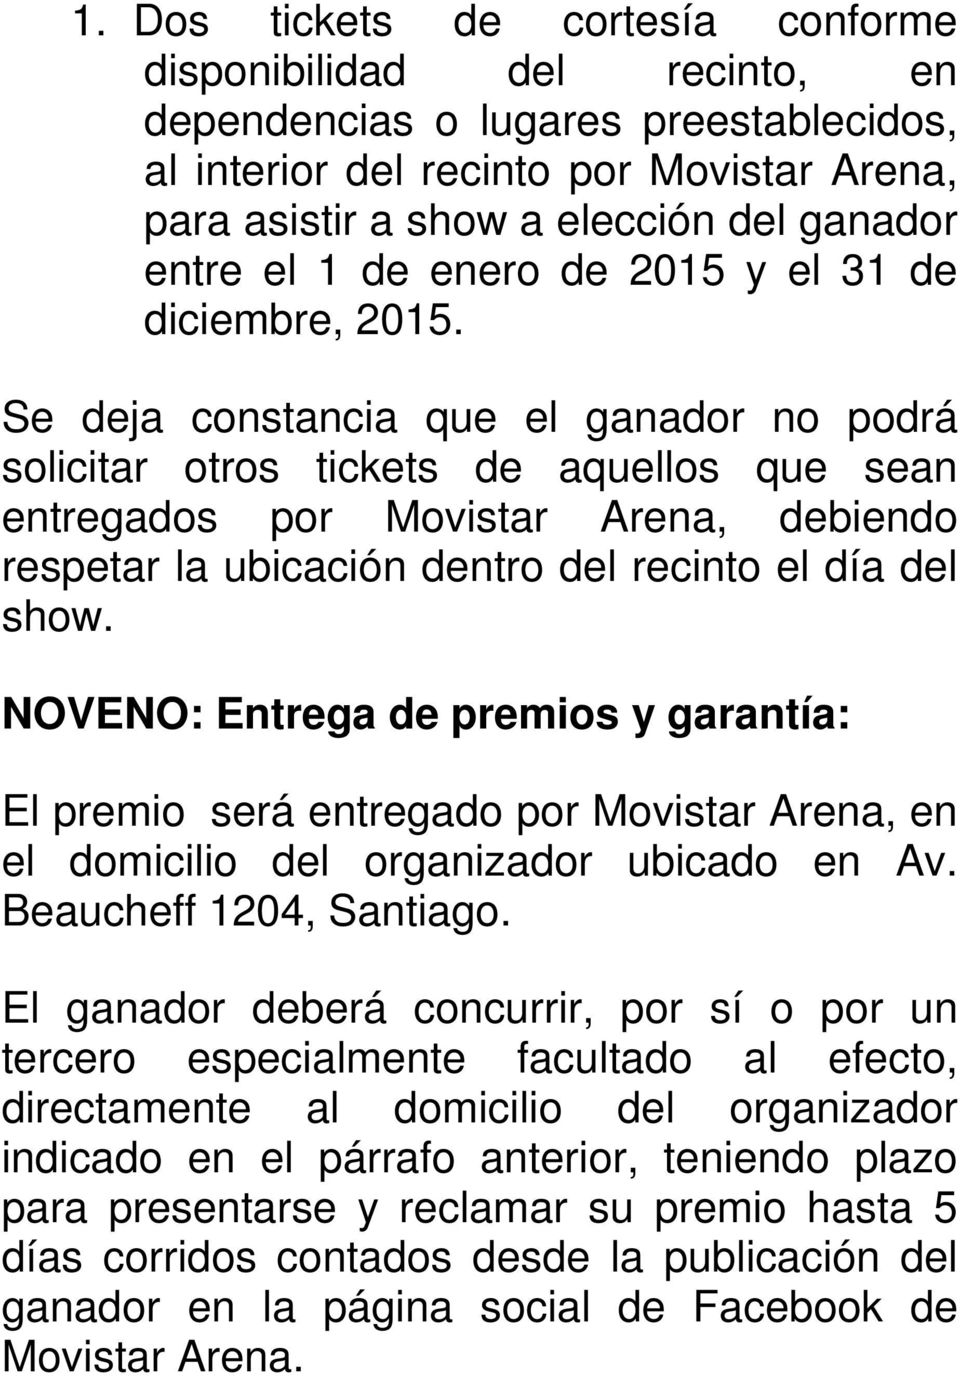 Se deja constancia que el ganador no podrá solicitar otros tickets de aquellos que sean entregados por Movistar Arena, debiendo respetar la ubicación dentro del recinto el día del show.